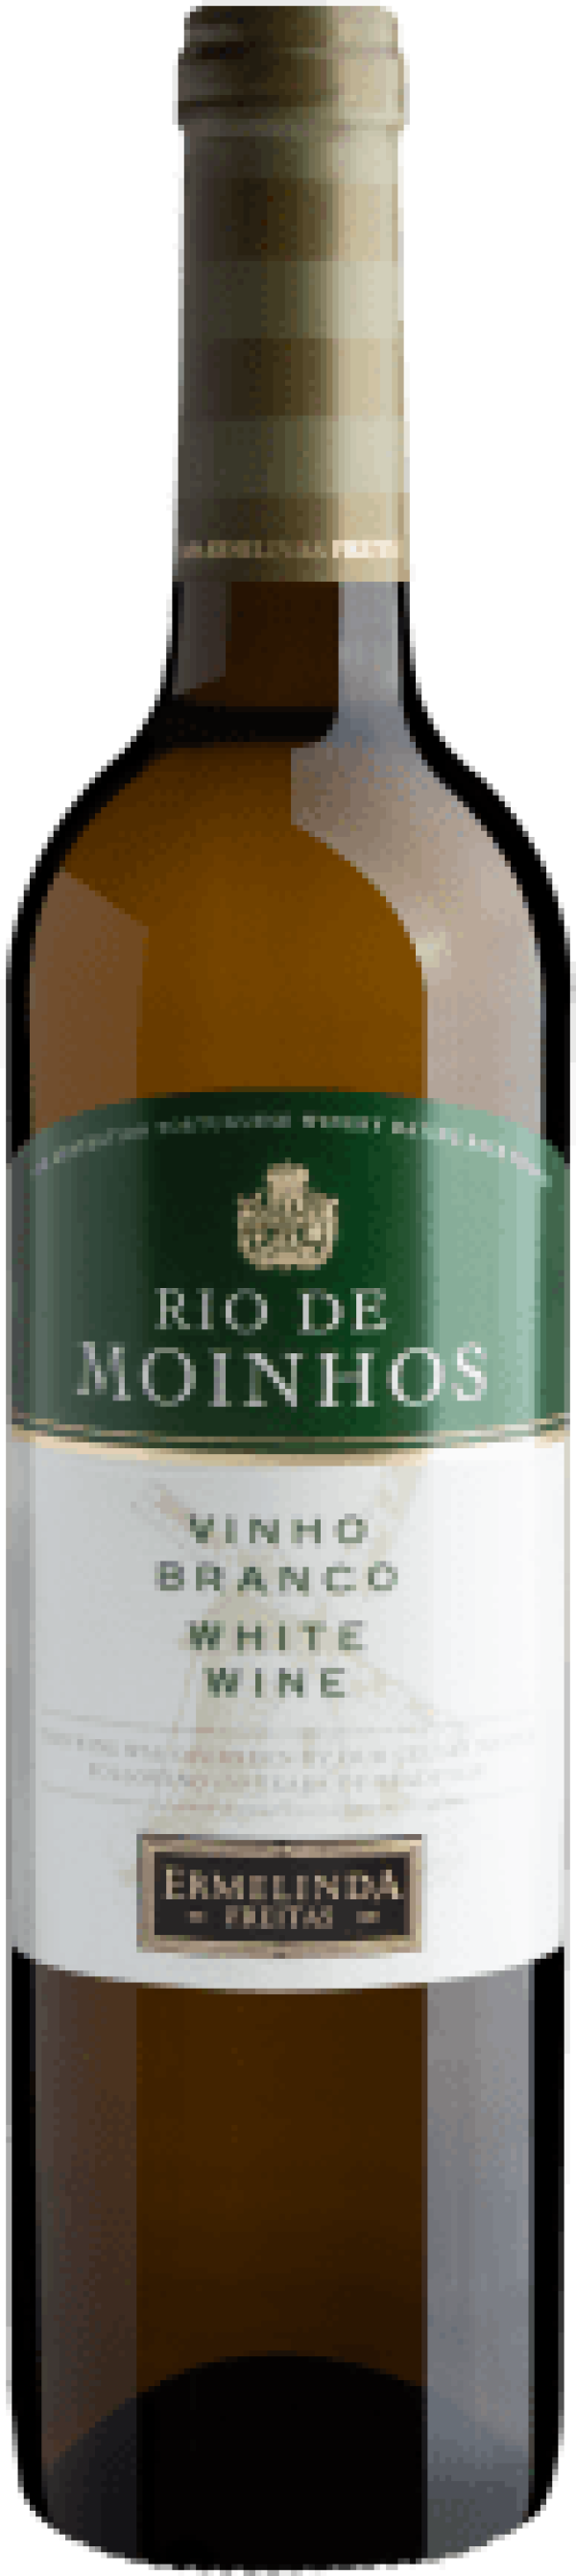 Rio de Moinhos Vinho Branco